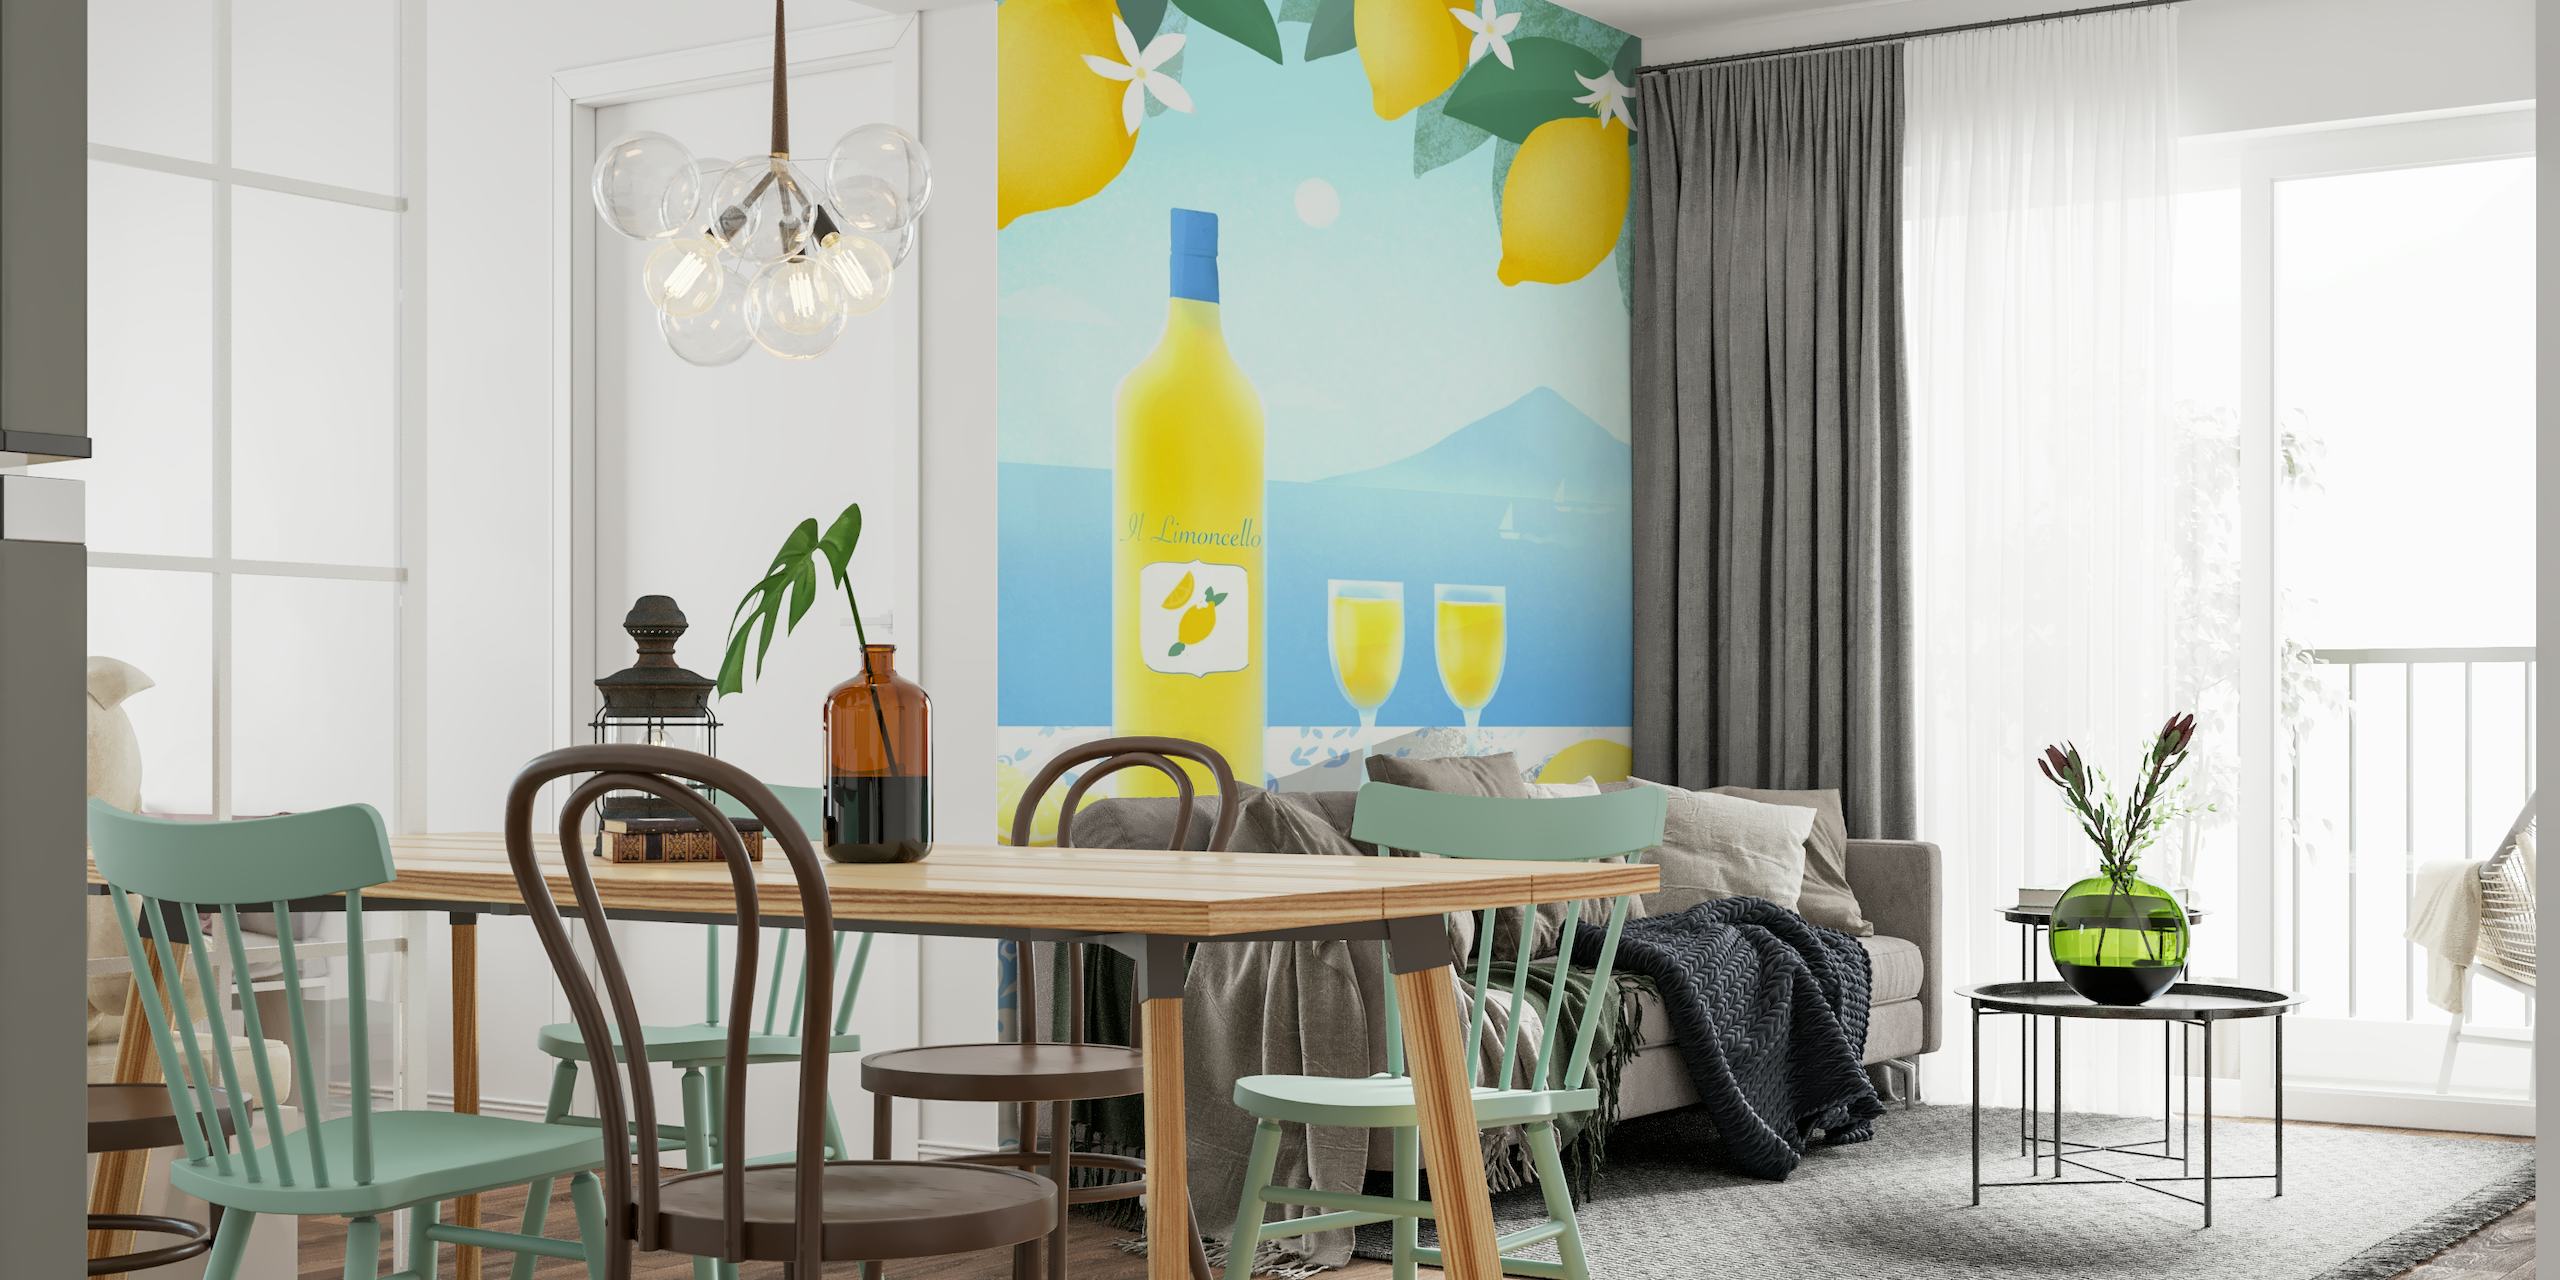 Limoncello fotobehang met citroenbomen, limoncellofles, glazen, uitzicht op zee en mediterrane tegels